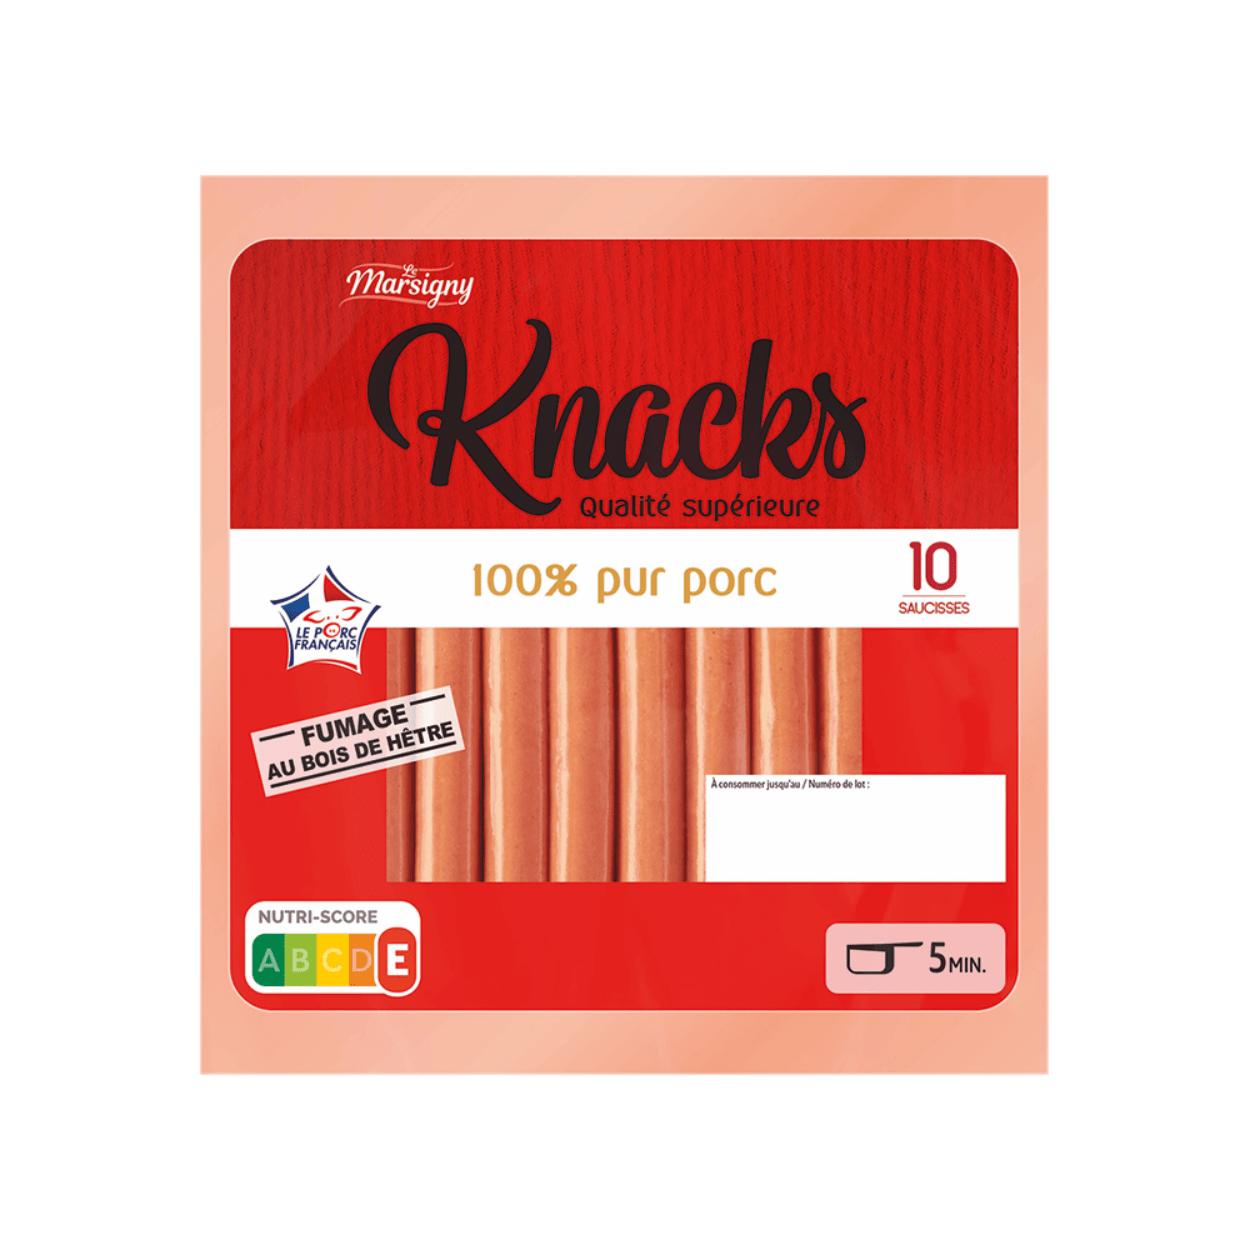 La gamme de saucisses Knacki